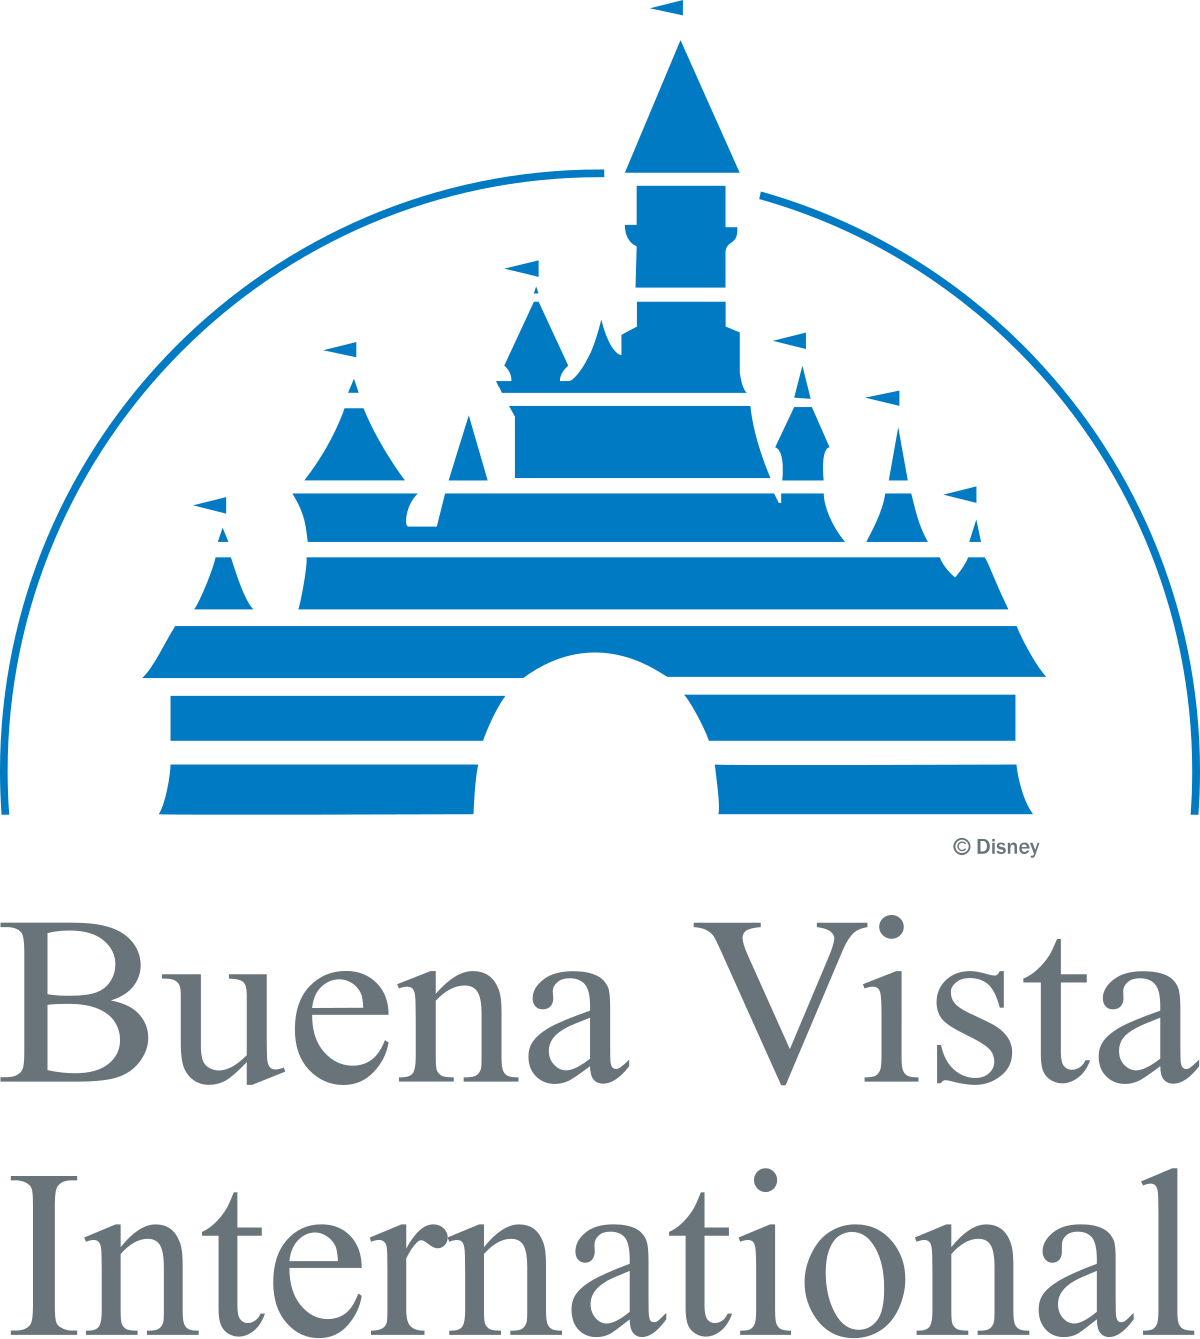 Buena Vista Brand Wikipedia